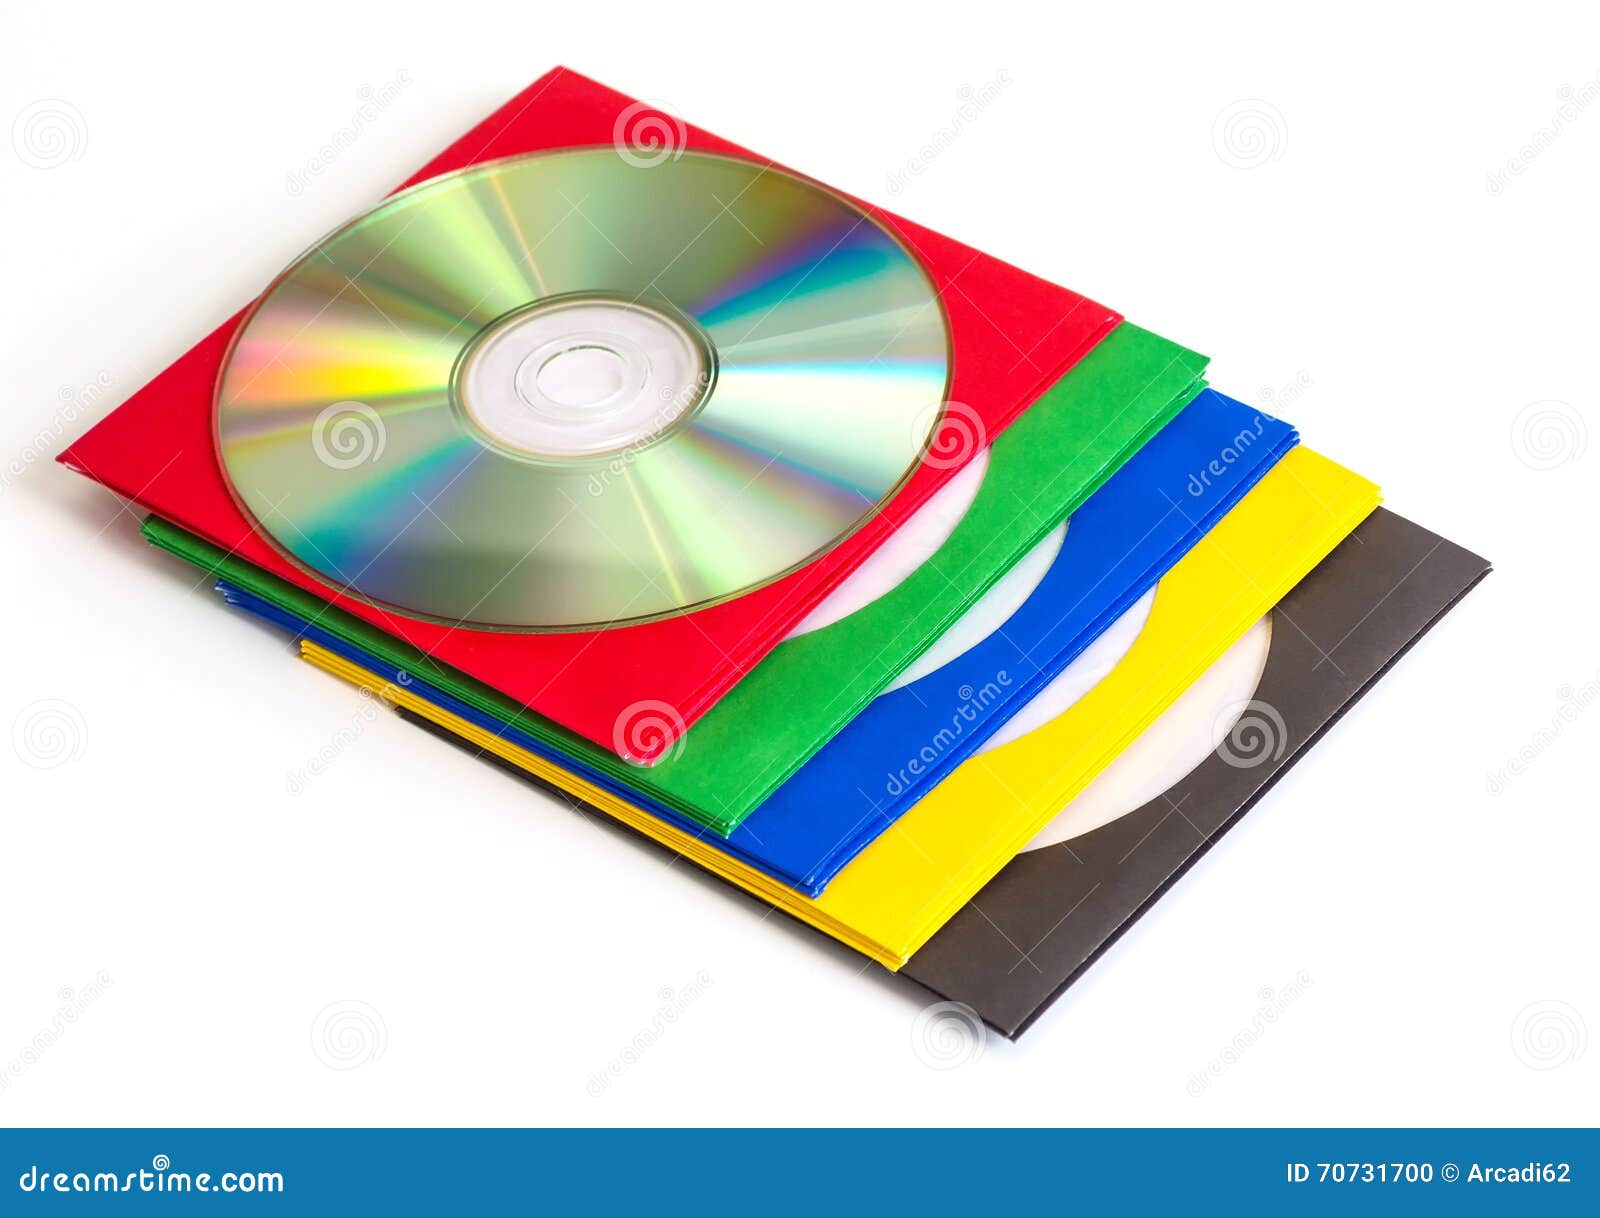 Плотный диск. Конверт для CD/DVD. Конверт для CD дисков. Конверты для CD дисков на белом фоне. Конверты для CD дисков прозрачные.